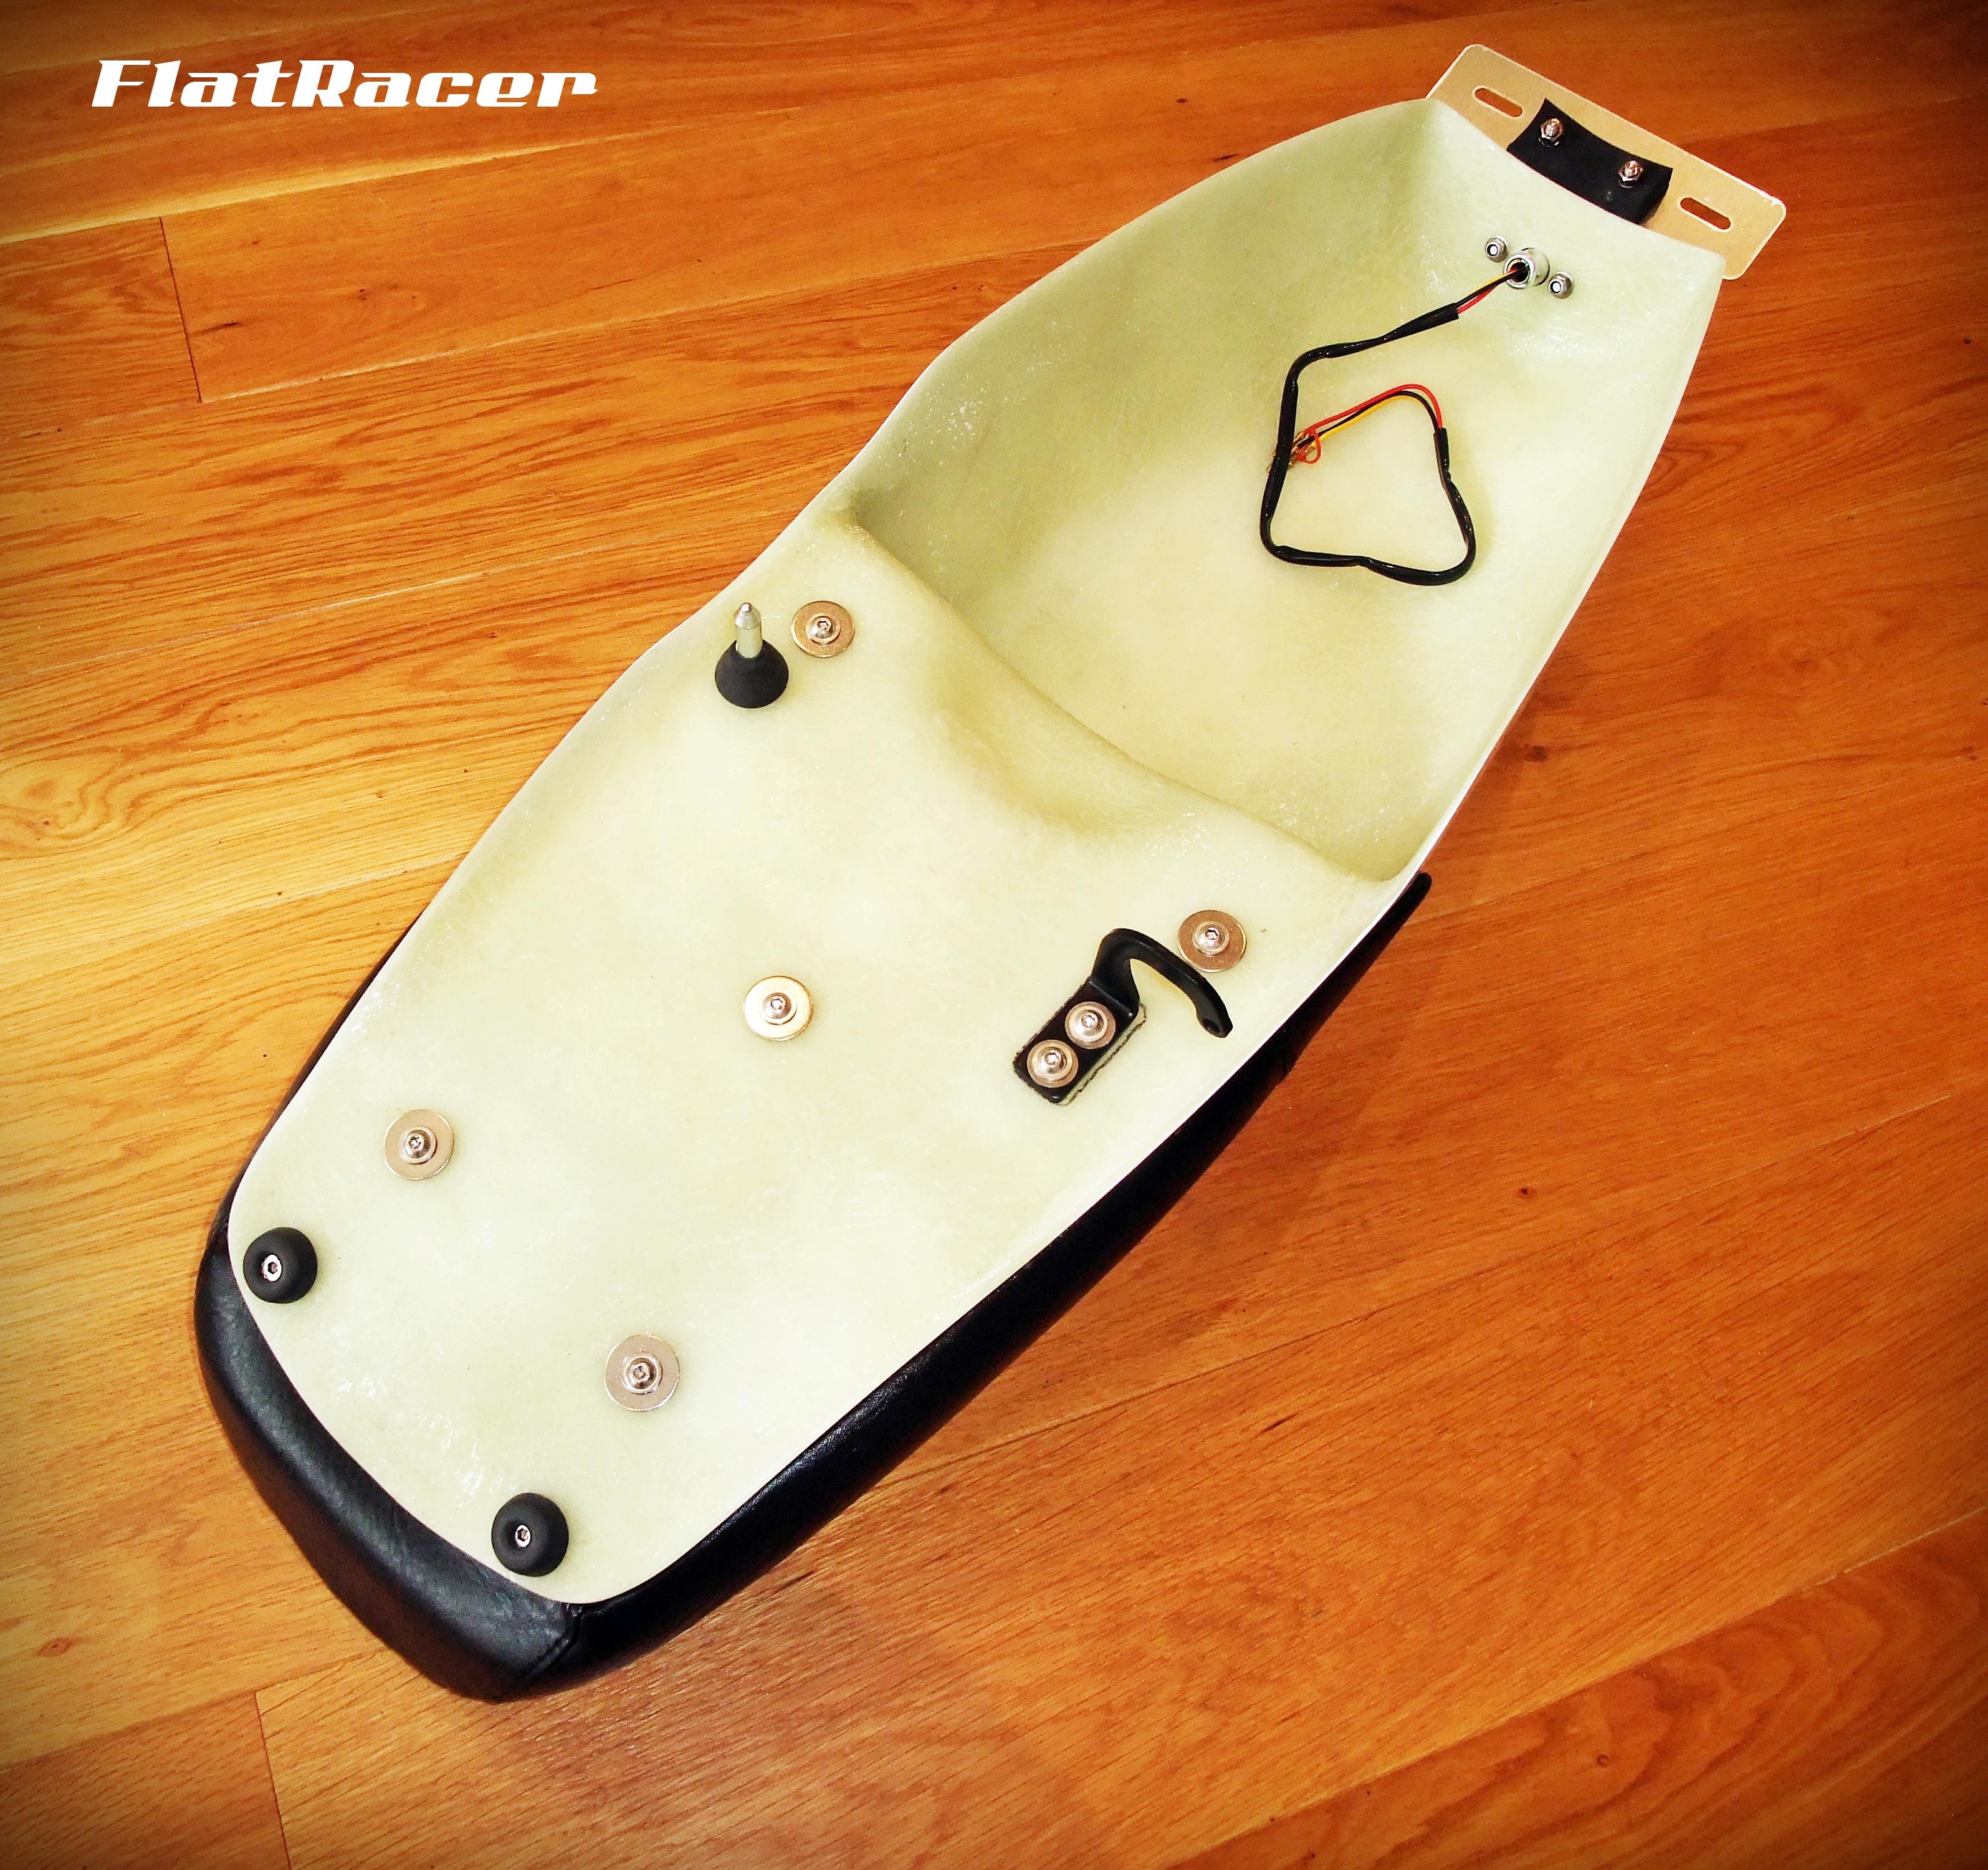 FlatRacer Spandau BMW Cafe Racer tail kit